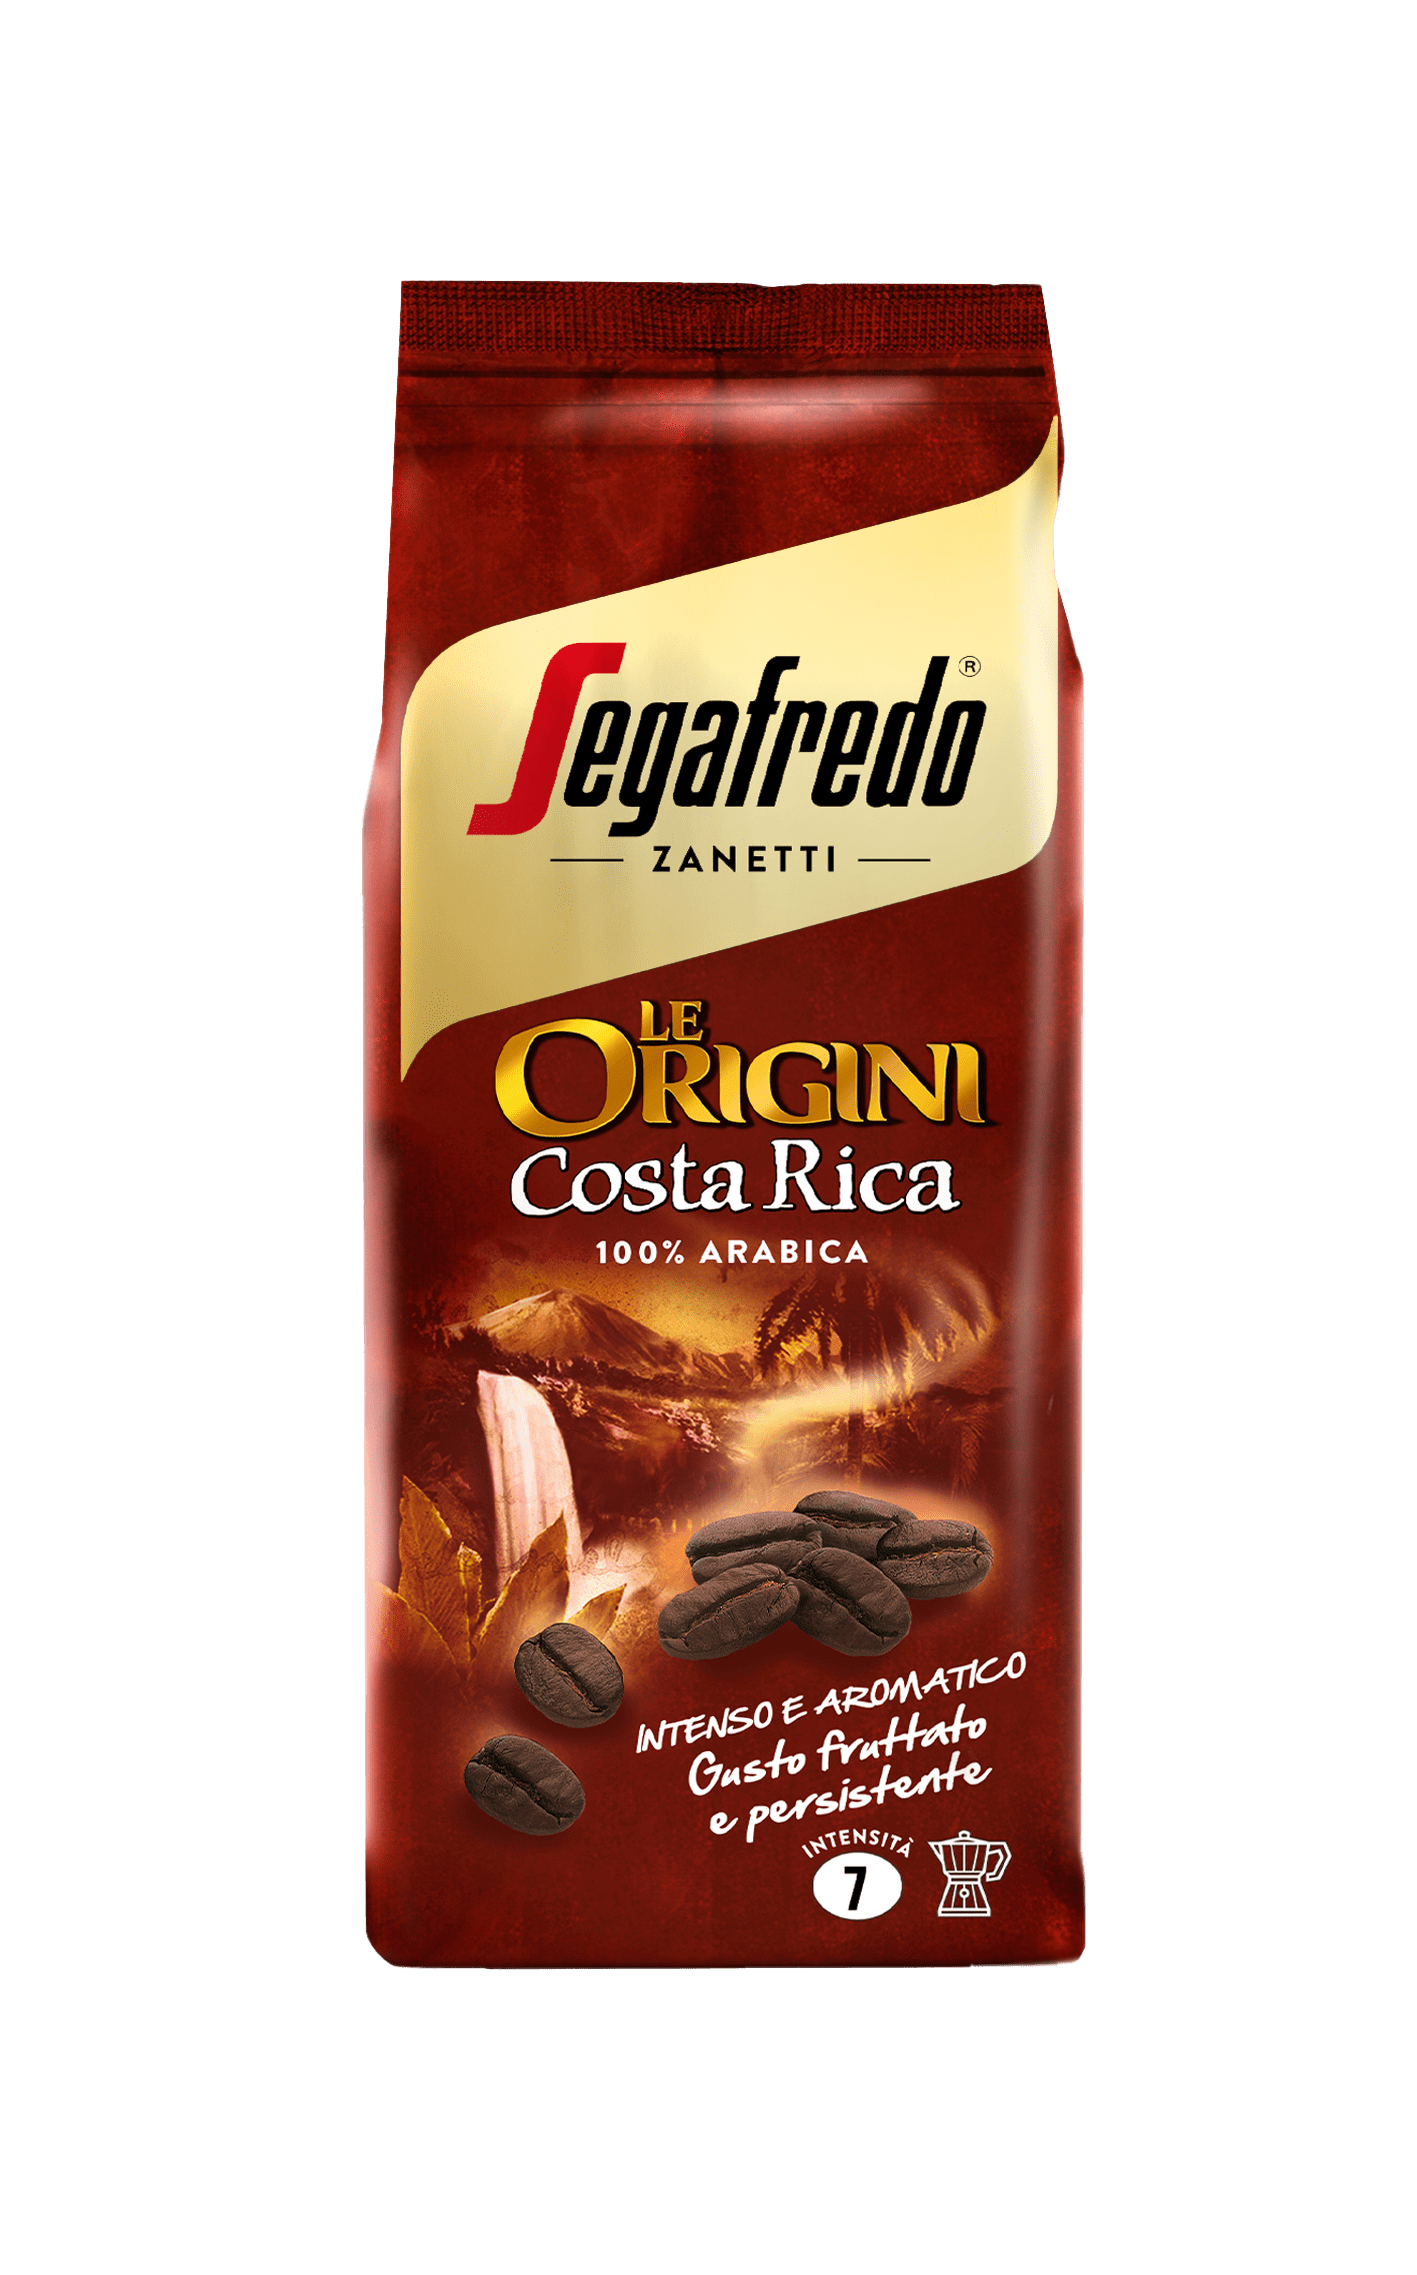 SEGAFREDO ZANETTI - LE ORIGINI: COSTA RICA GROUND COFFEE (SINGLE ORIGIN)